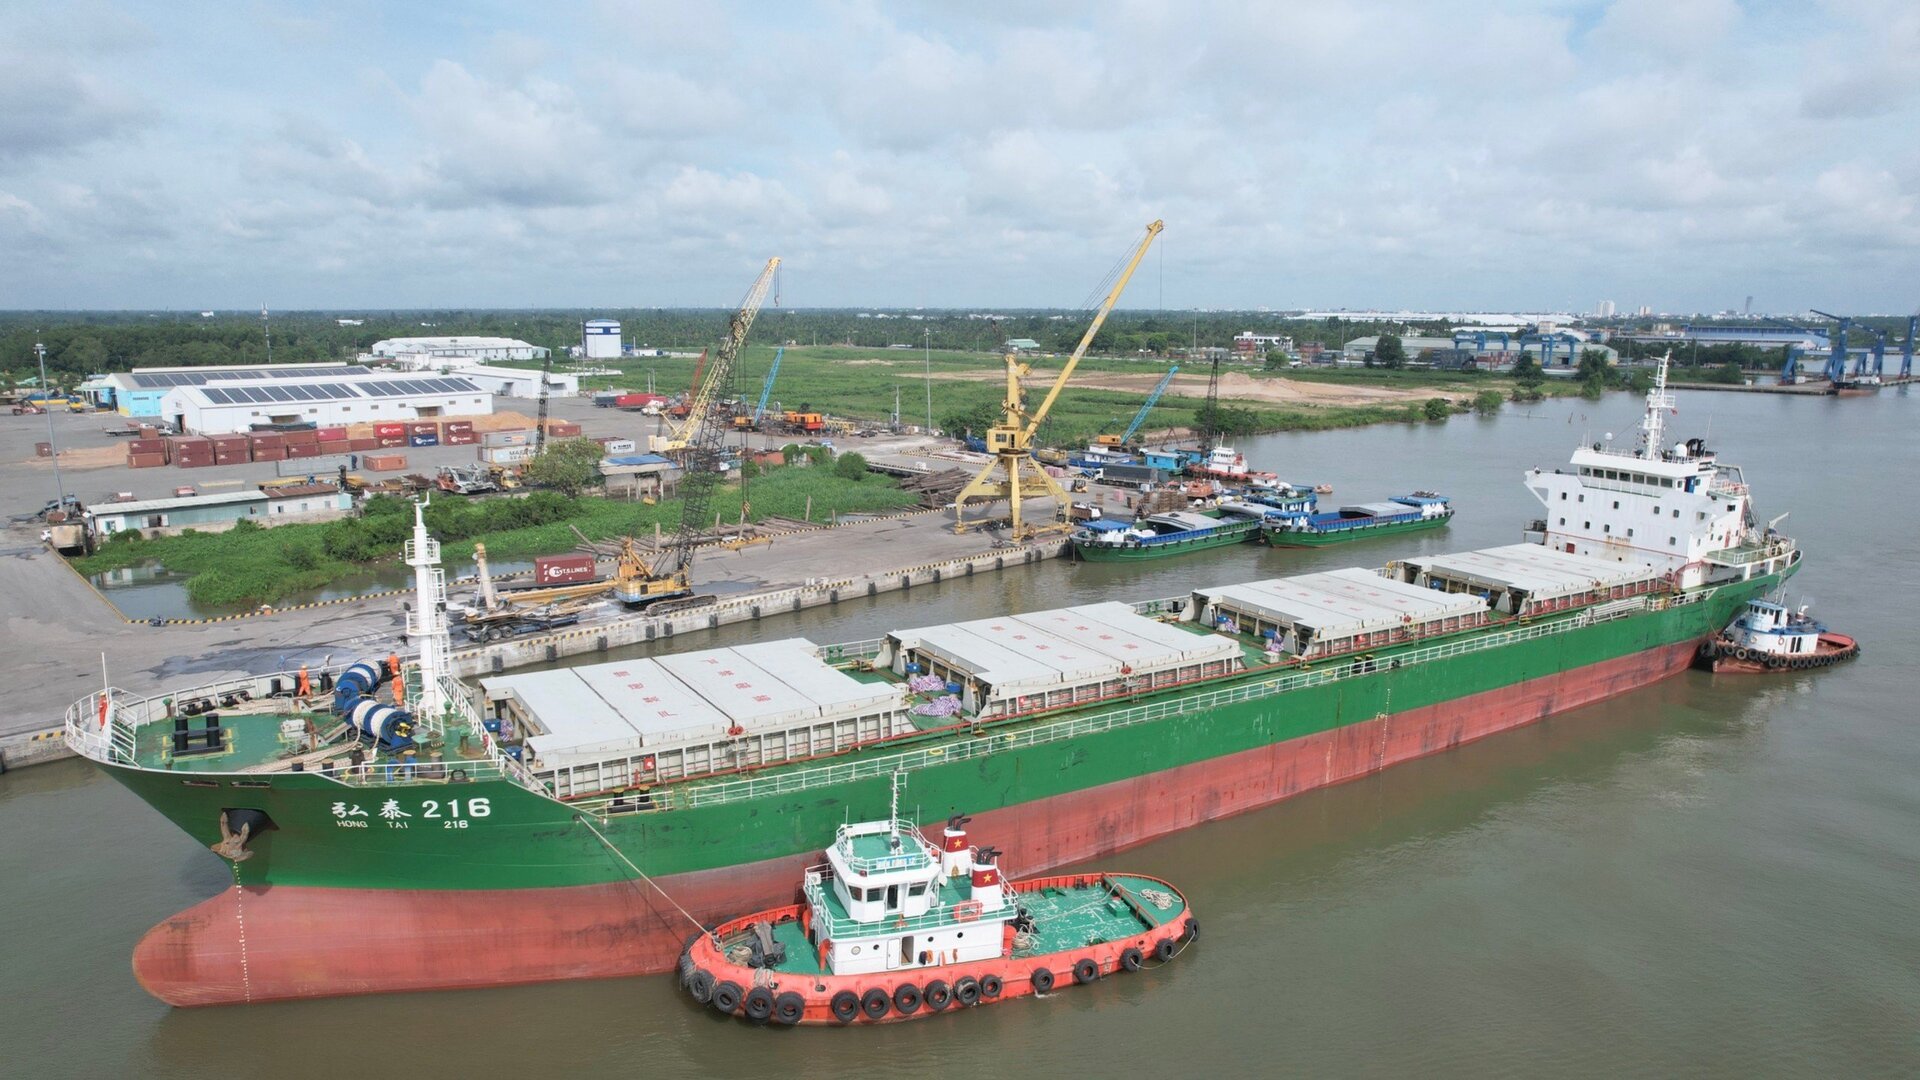 Hằng năm, có hơn 20 triệu tấn hàng hóa ở ĐBSCL được đưa thẳng về ĐNB xuất khẩu hoặc chế biến mà không chọn các cảng ở khu vực này làm nơi xuất phát.